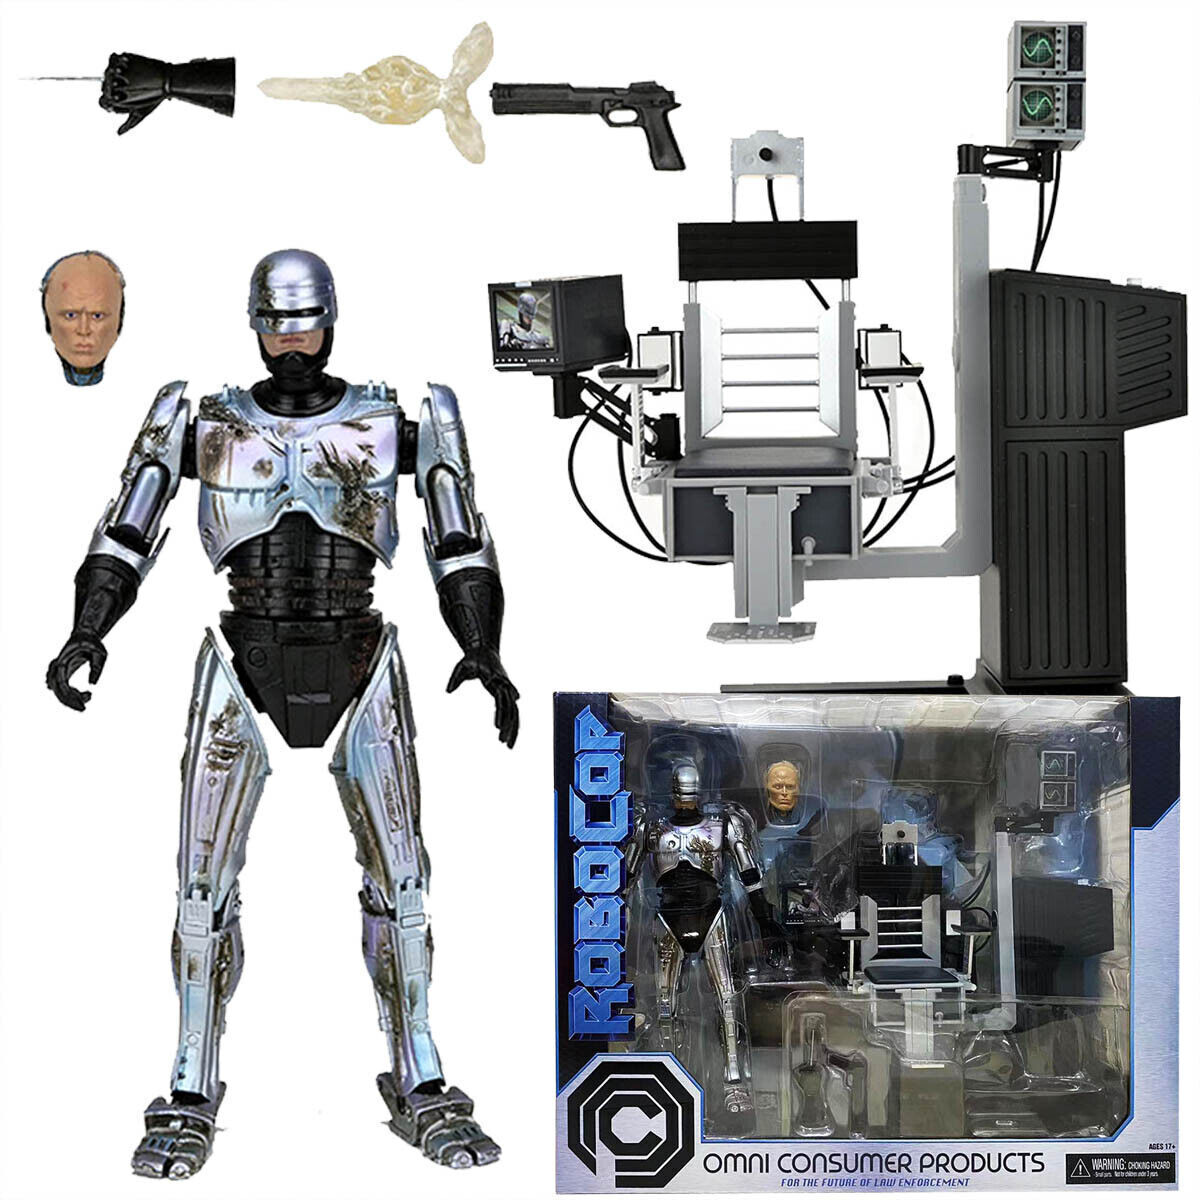 RoboCop - NECA - Figurine Ultimate Battle-Damaged Robocop w/ Chair 18cm